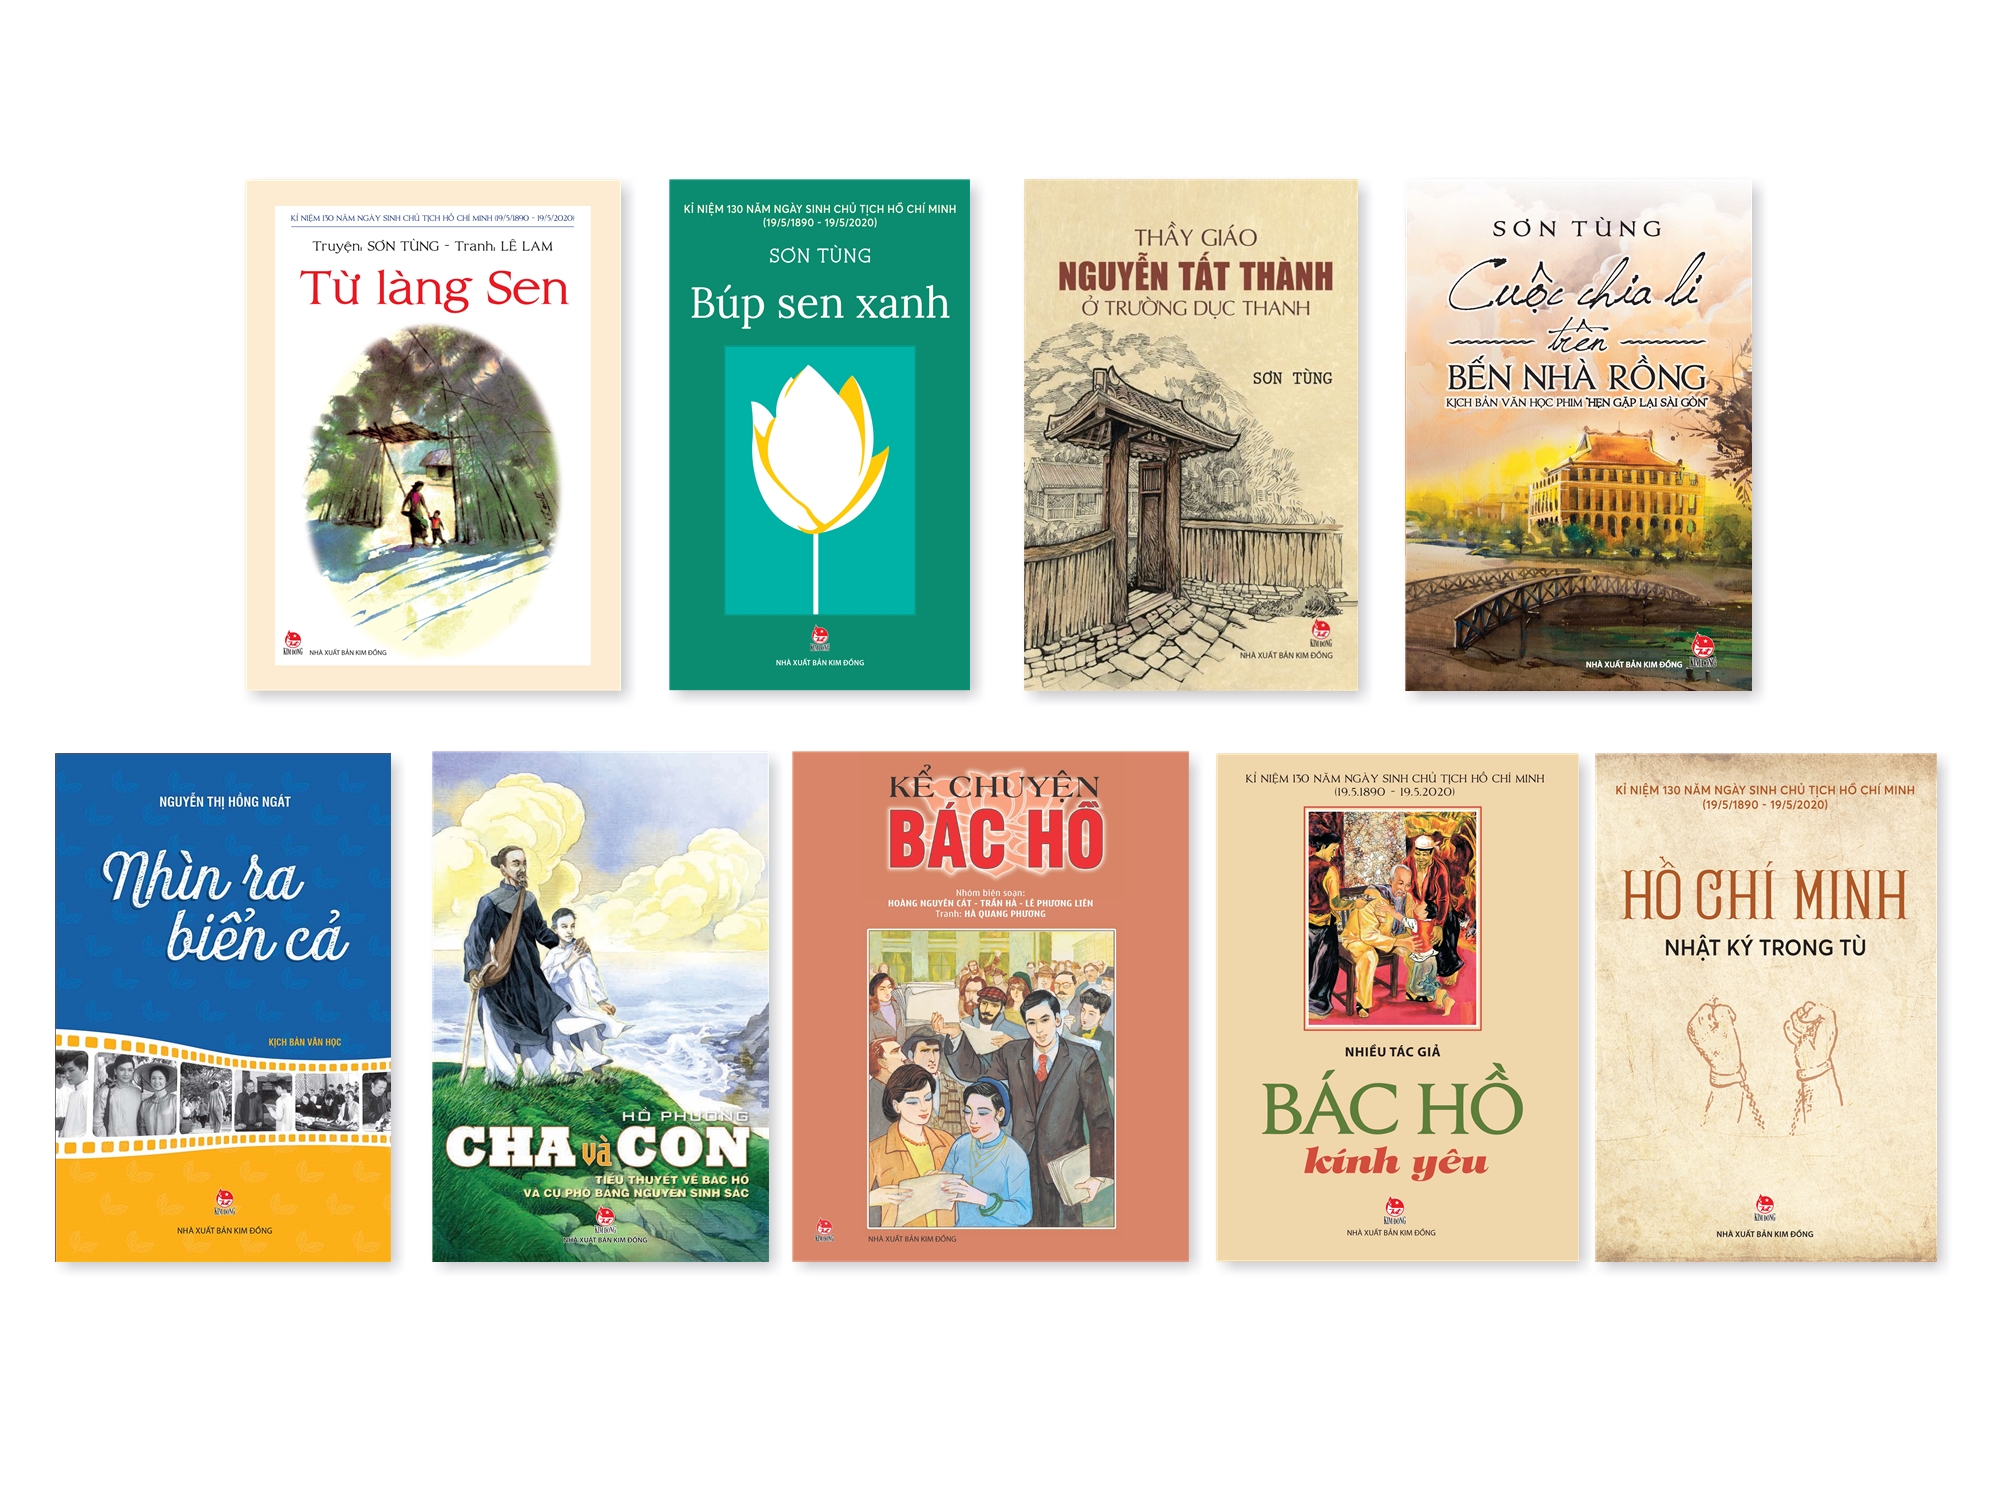 Những tựa sách viết về Bác Hồ của nhà xuất bản Kim Đồng